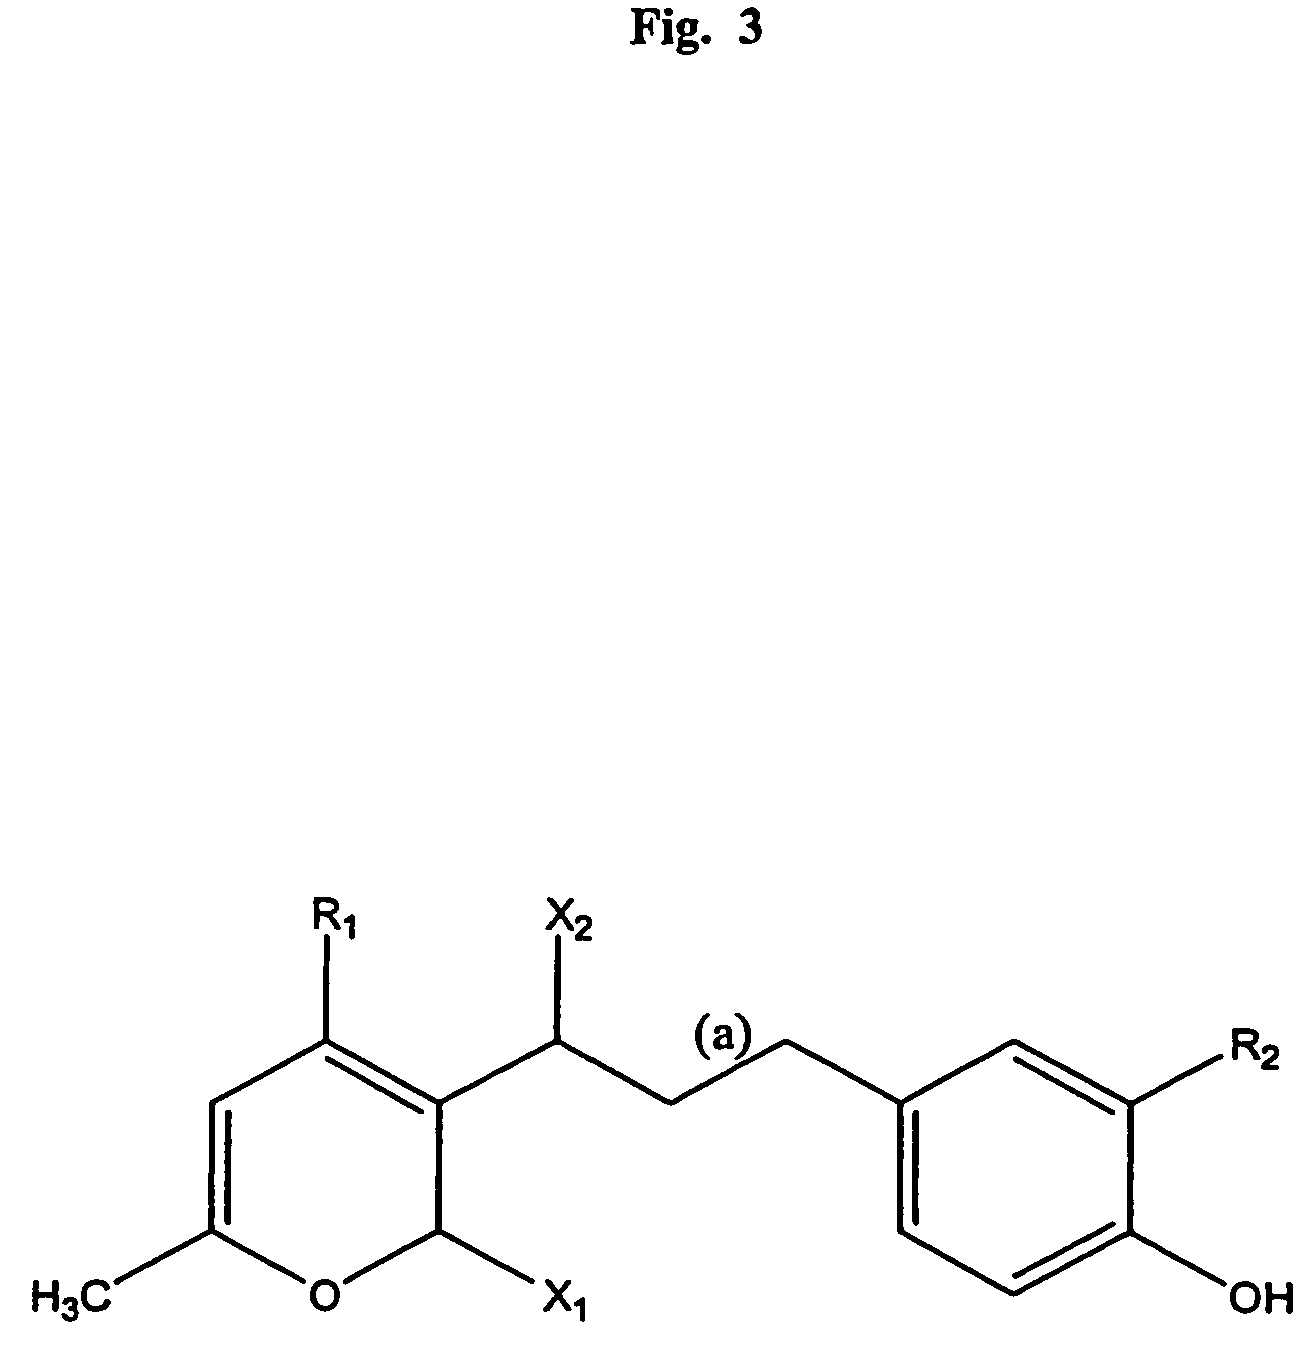 Small molecule inhibitors of necrosis